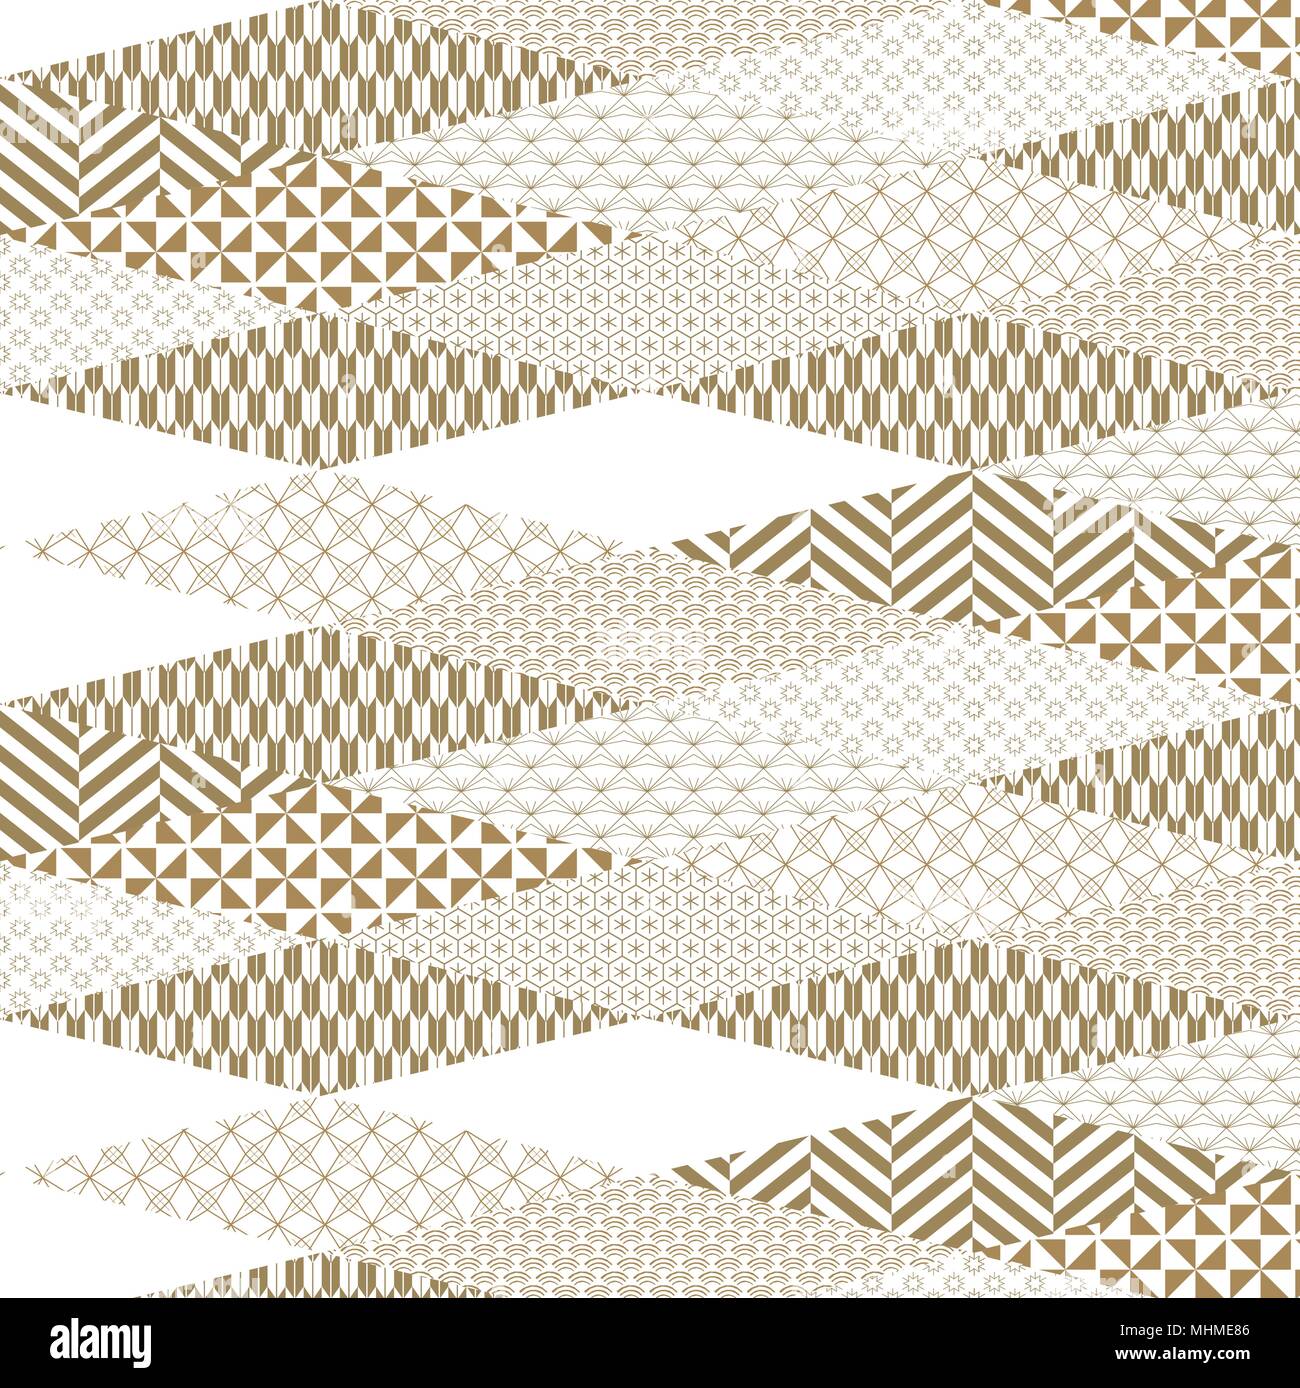 Japanische Muster Vektor. Gold geometrischen Hintergrund in origami Papier Falt-Design für Deckblatt Design, Vorlage, Hintergrund, Poster. Stock Vektor